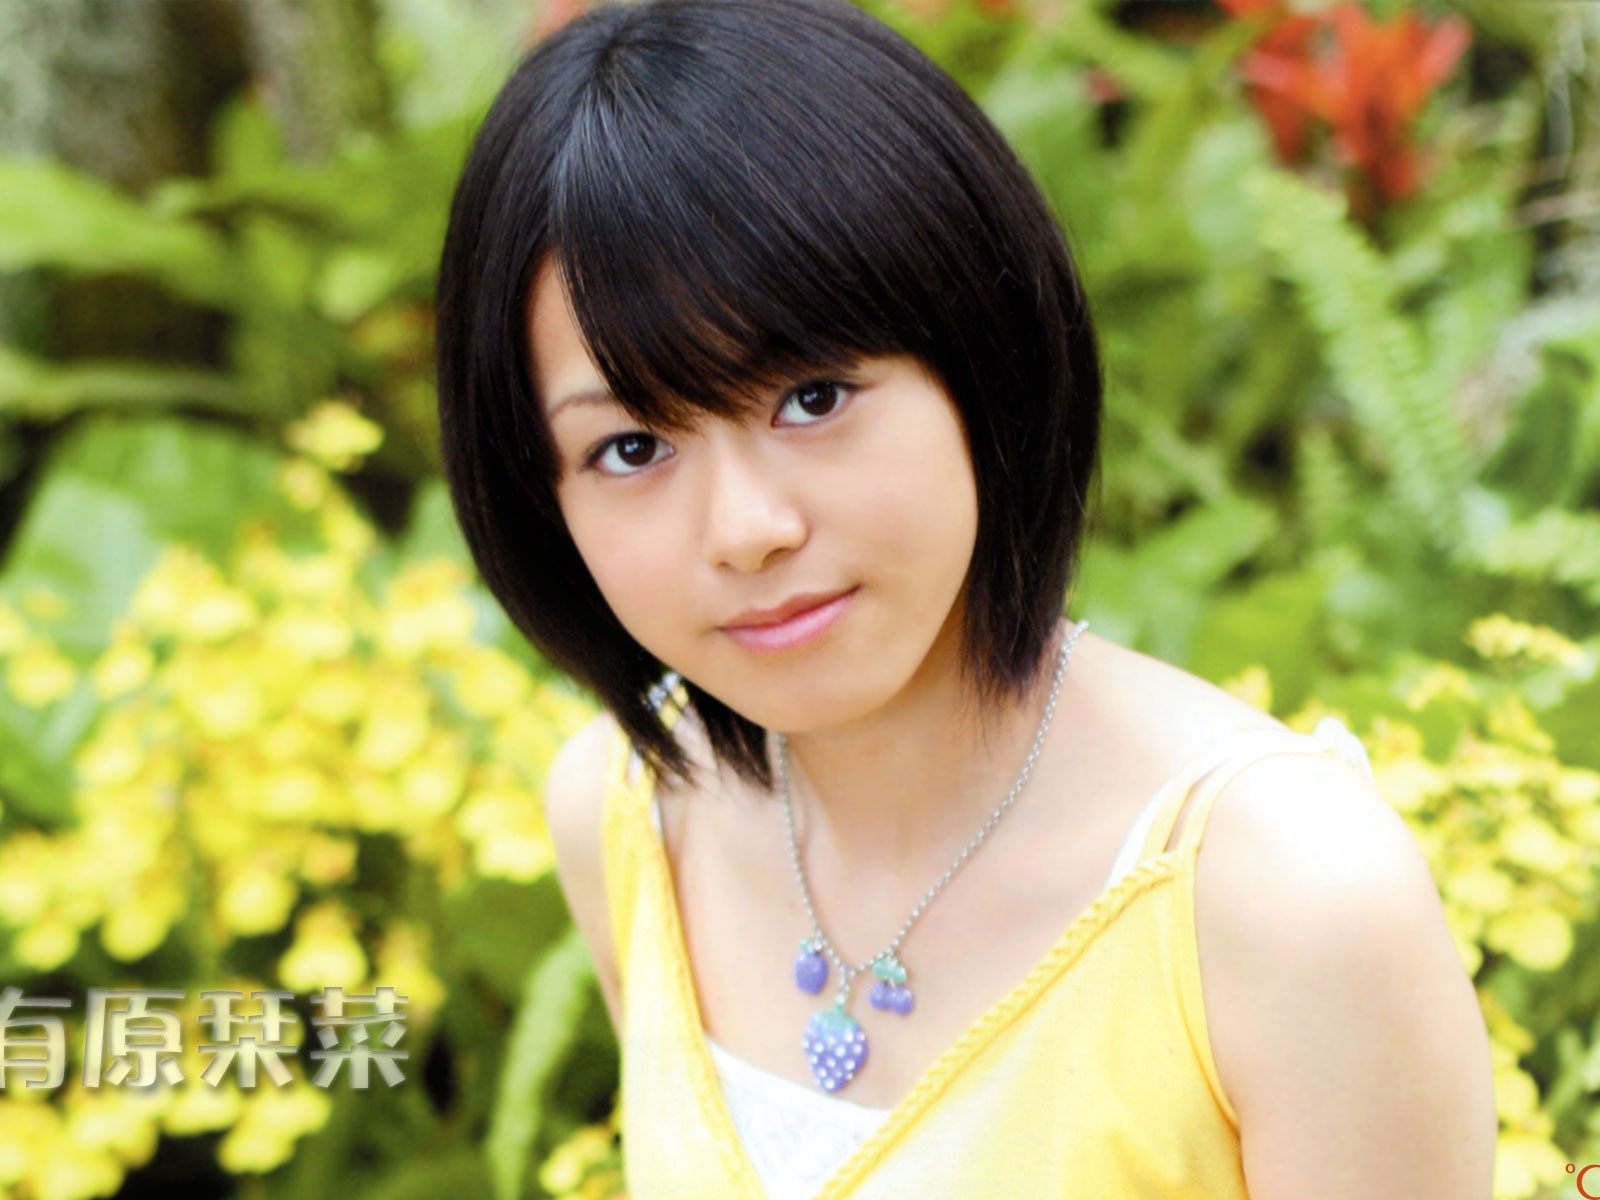 Cute japanische Schönheit Foto-Portfolio #9 - 1600x1200